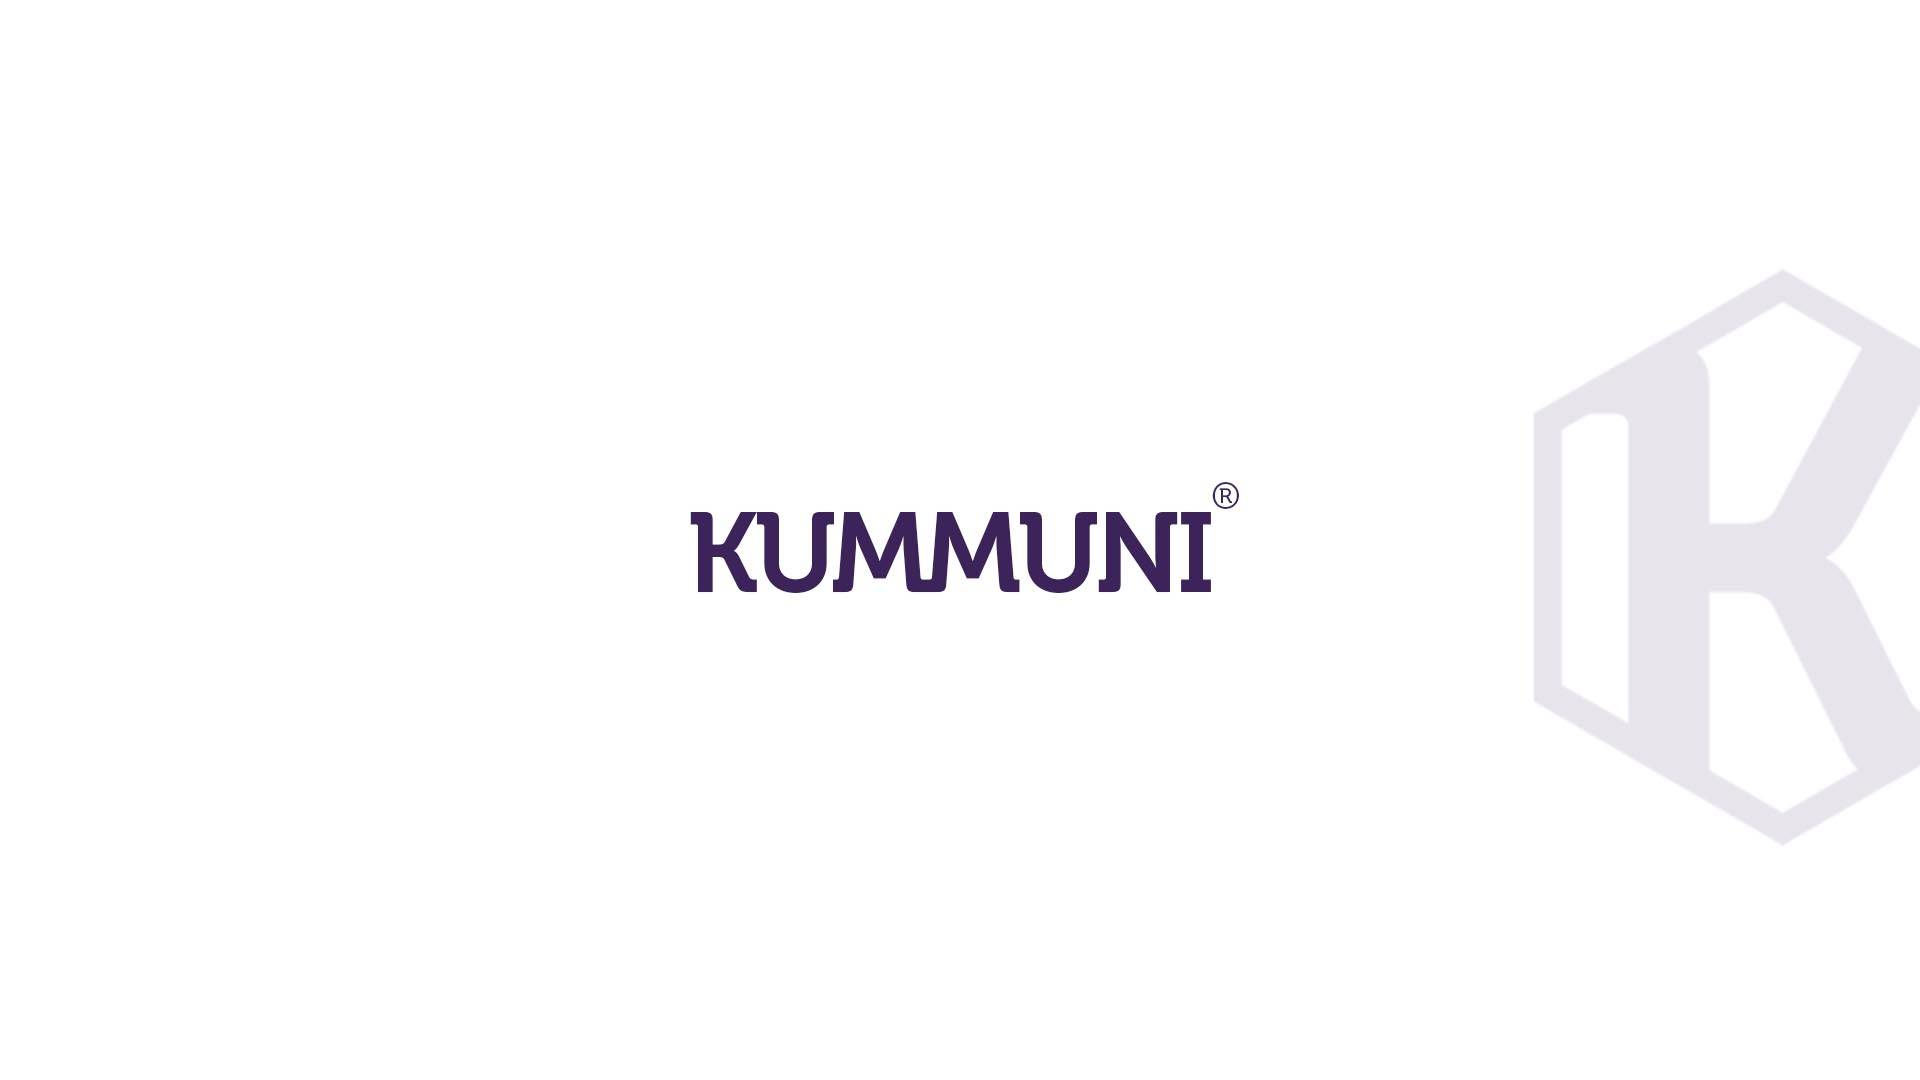 KUMMUNI header logotype logomark